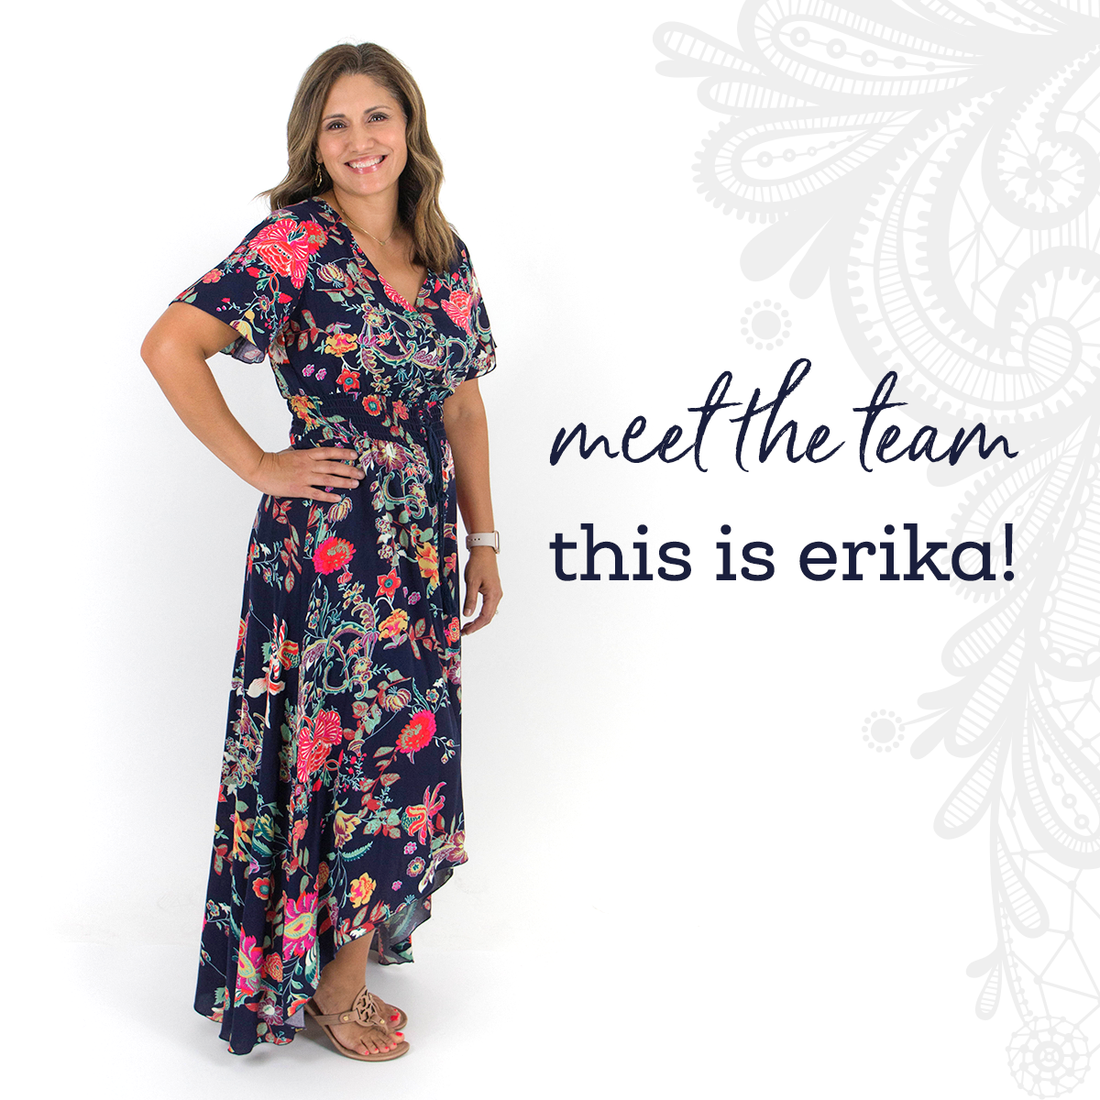 Meet Erika